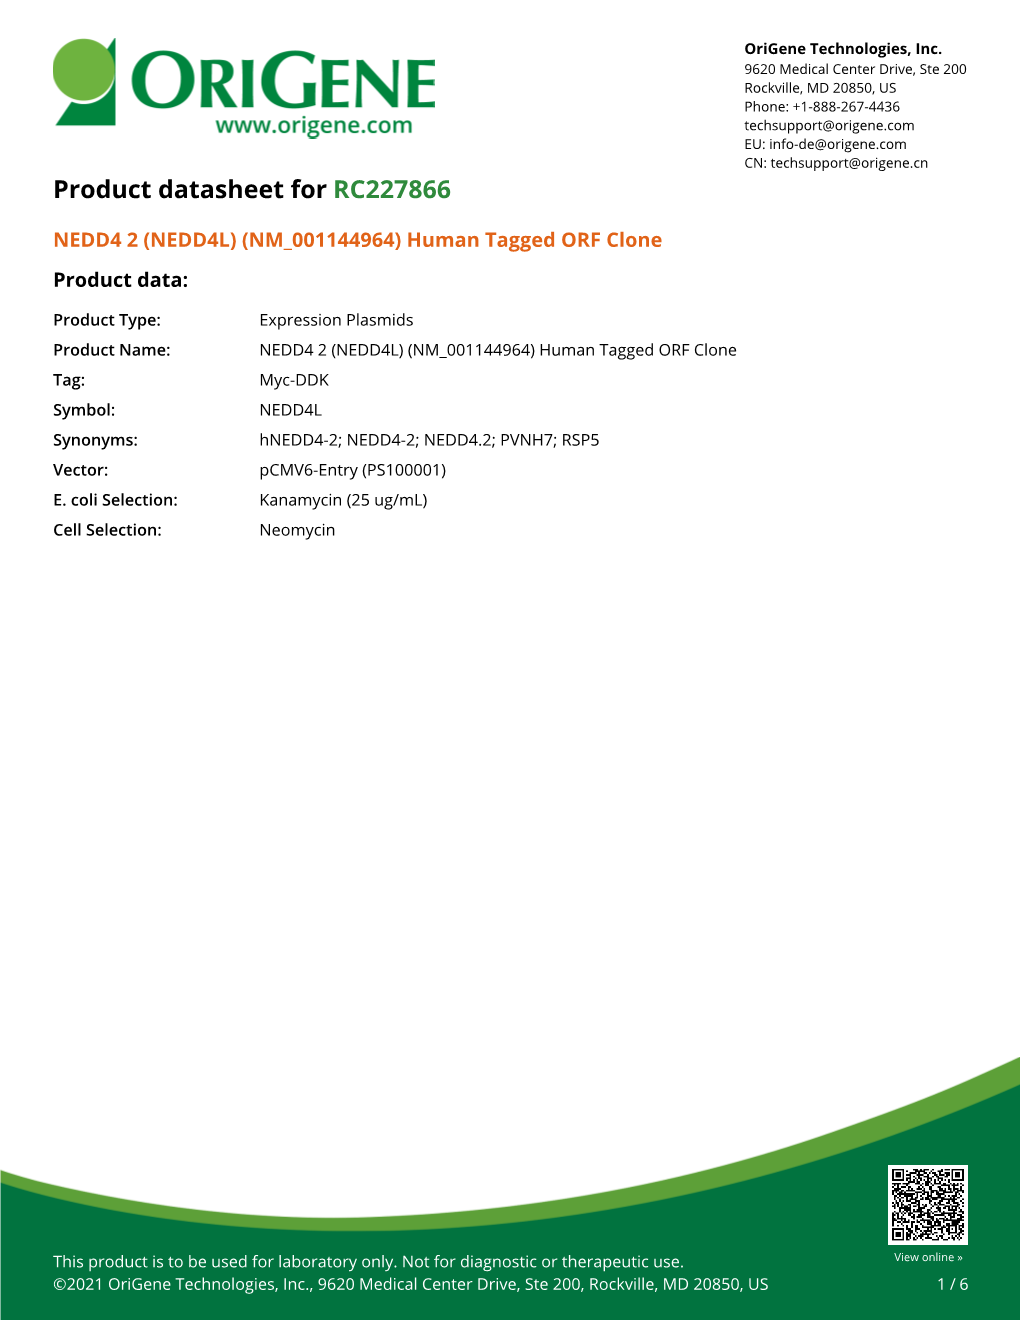 NEDD4 2 (NEDD4L) (NM 001144964) Human Tagged ORF Clone Product Data